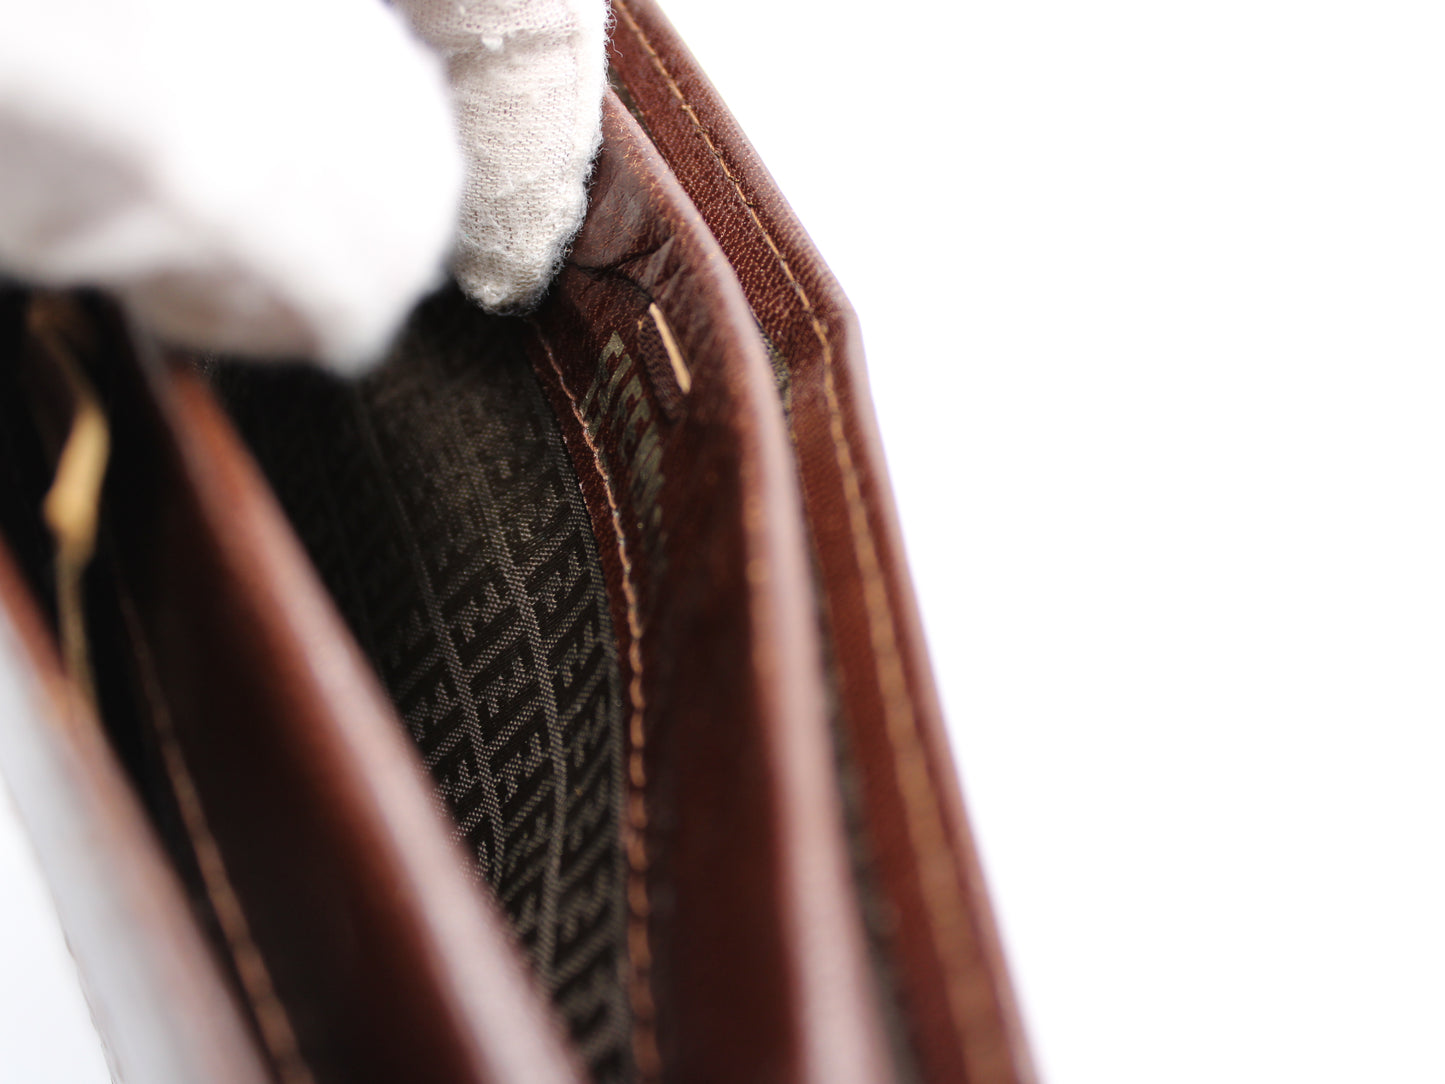 Fendi Woven Brown Leather Framed Bag Vintage